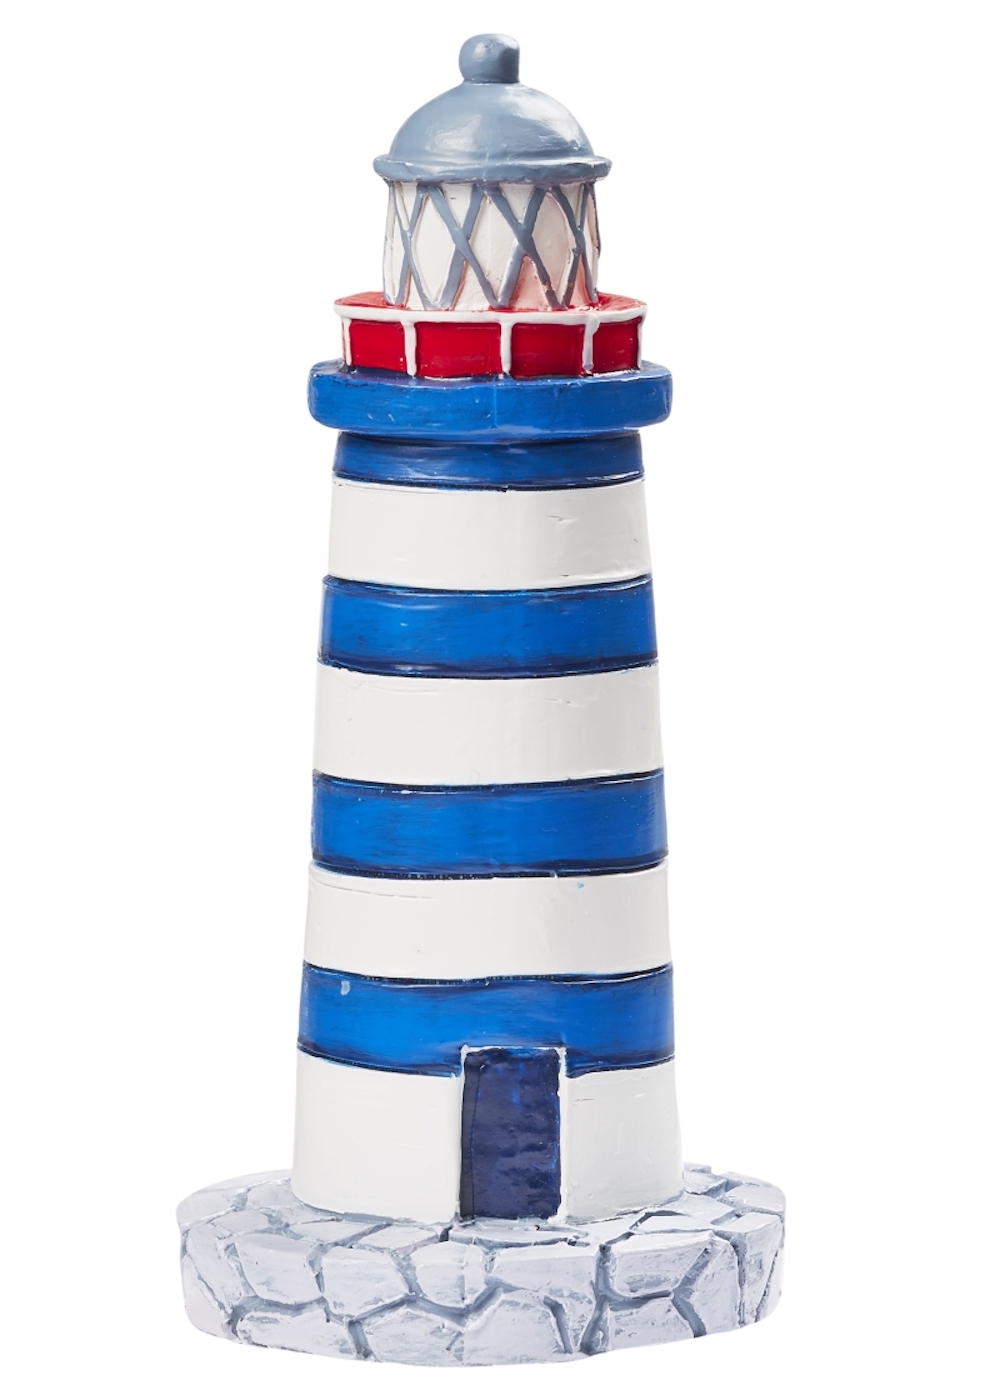 Miniatur Leuchtturm, blau/weiß, ca. 7,5cm